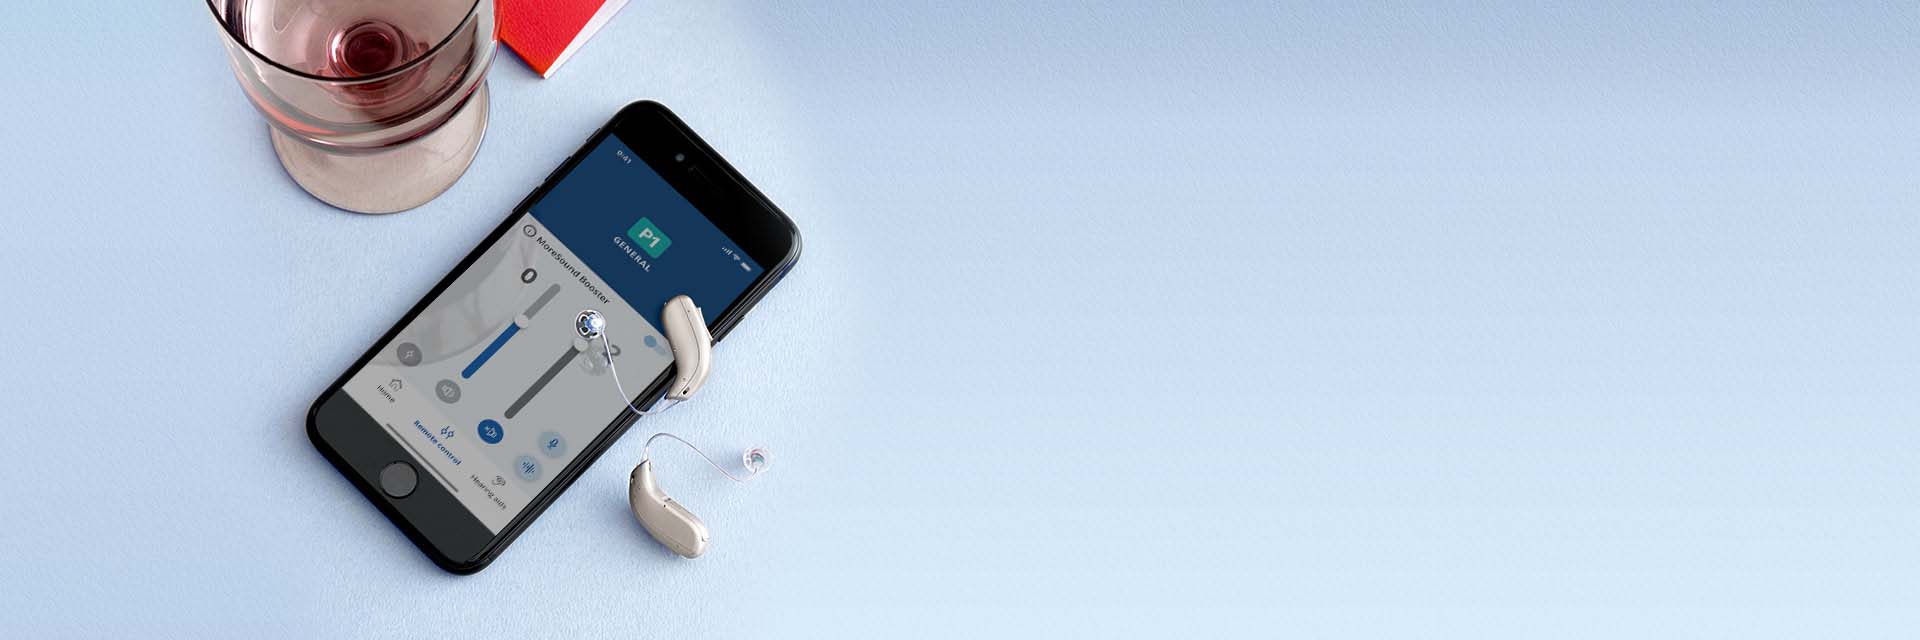 Bild på telefon och två hörapparater som har Bluetooth. Hörapparater är silverfärgade.